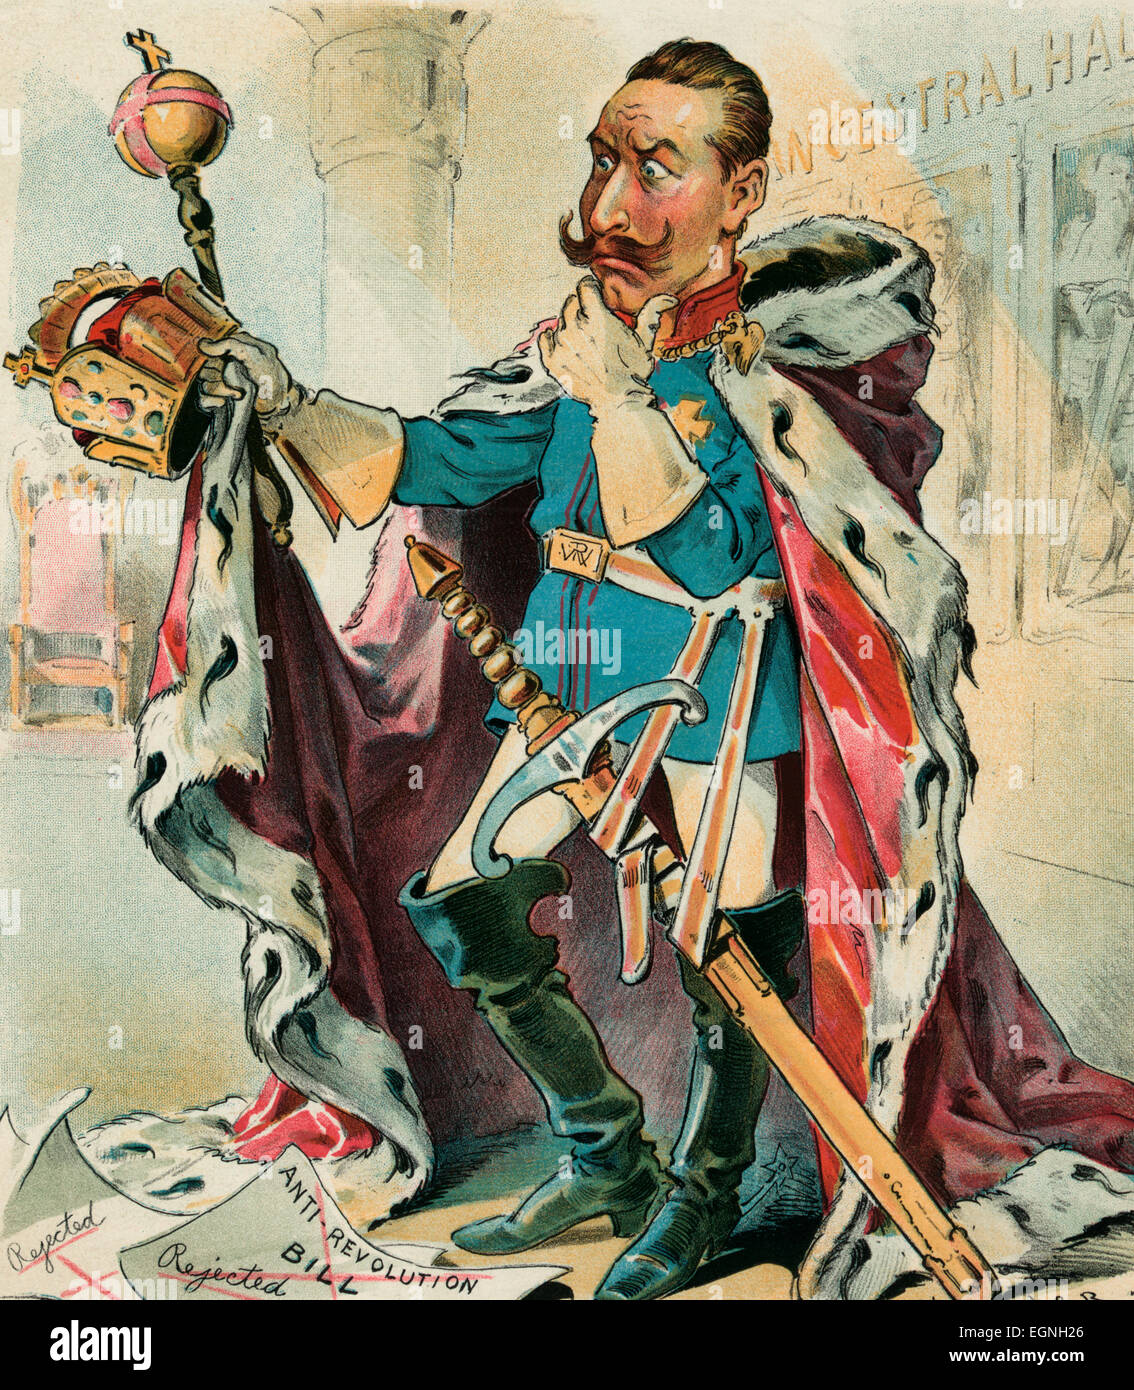 Un perplesso - Kaiser Guglielmo II, l'imperatore tedesco, indossa una tunica e grande spada, tenendo una corona e uno scettro e guardando perplesso oltre il motivo per cui questi simboli di autorità non è più il comando rispetto egli pensa che meritano. Cartoon politico 1895 Foto Stock